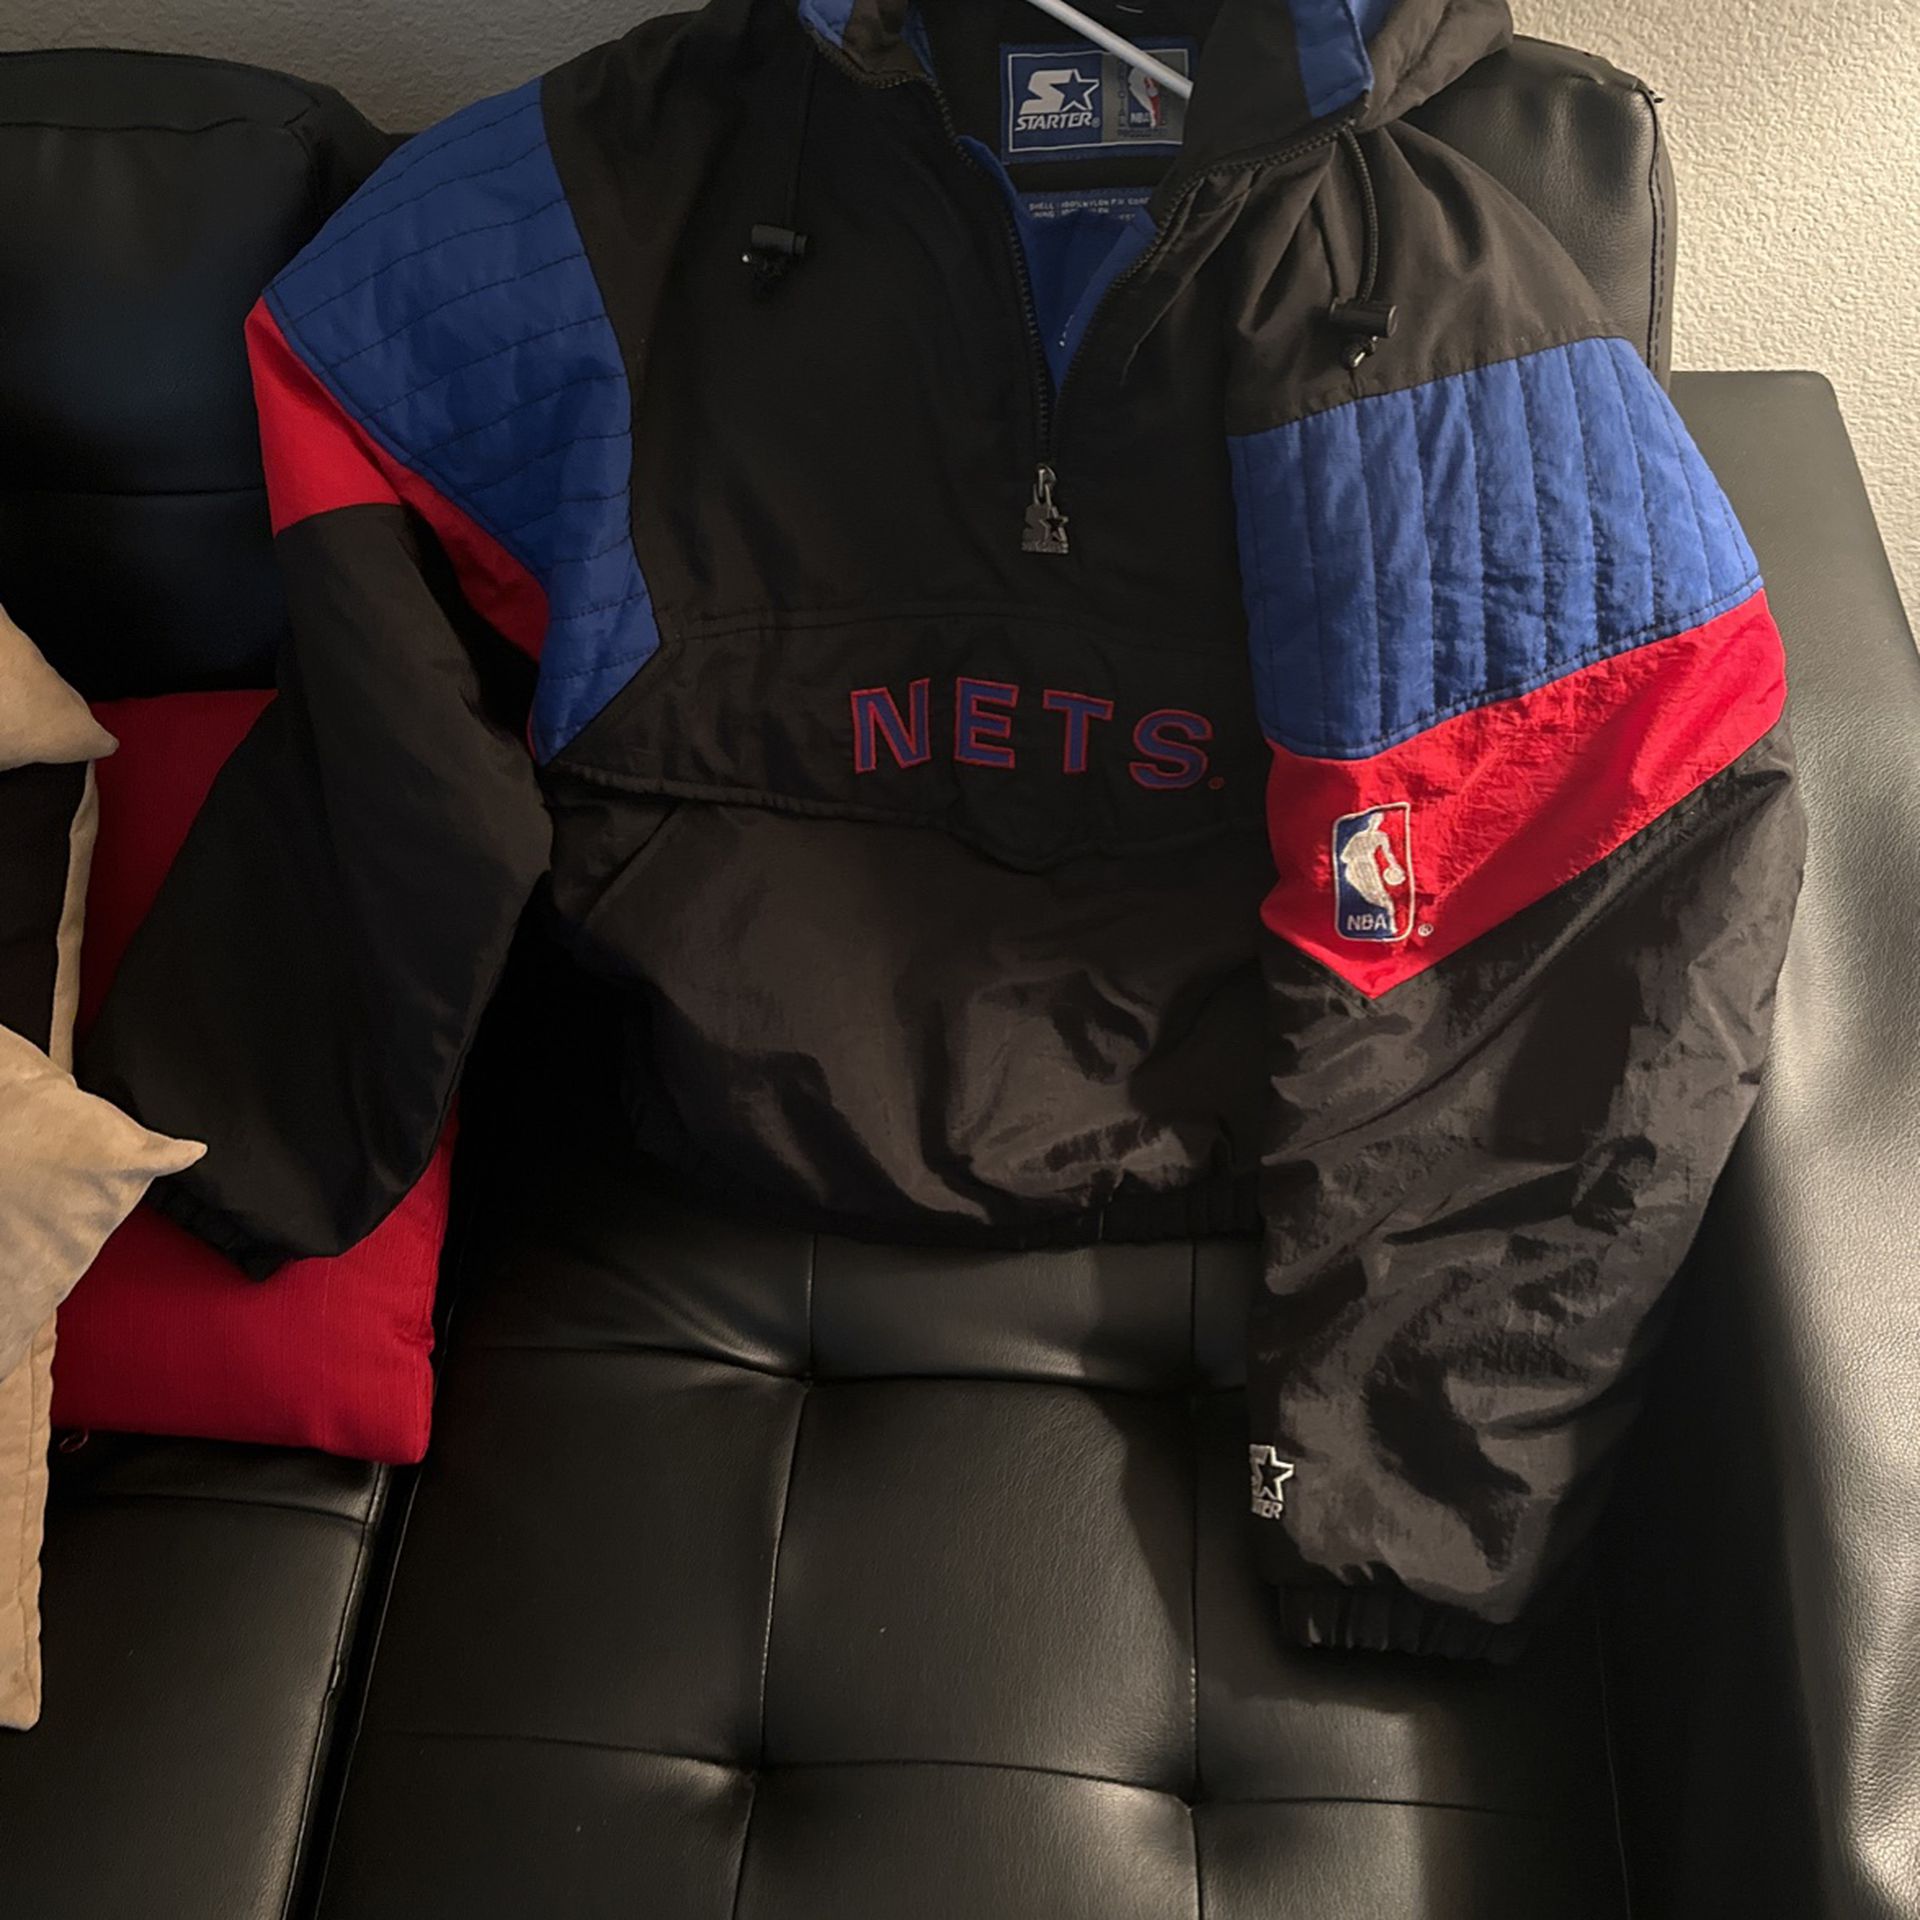 Starter Brooklyn Nets NBA Jackets for sale